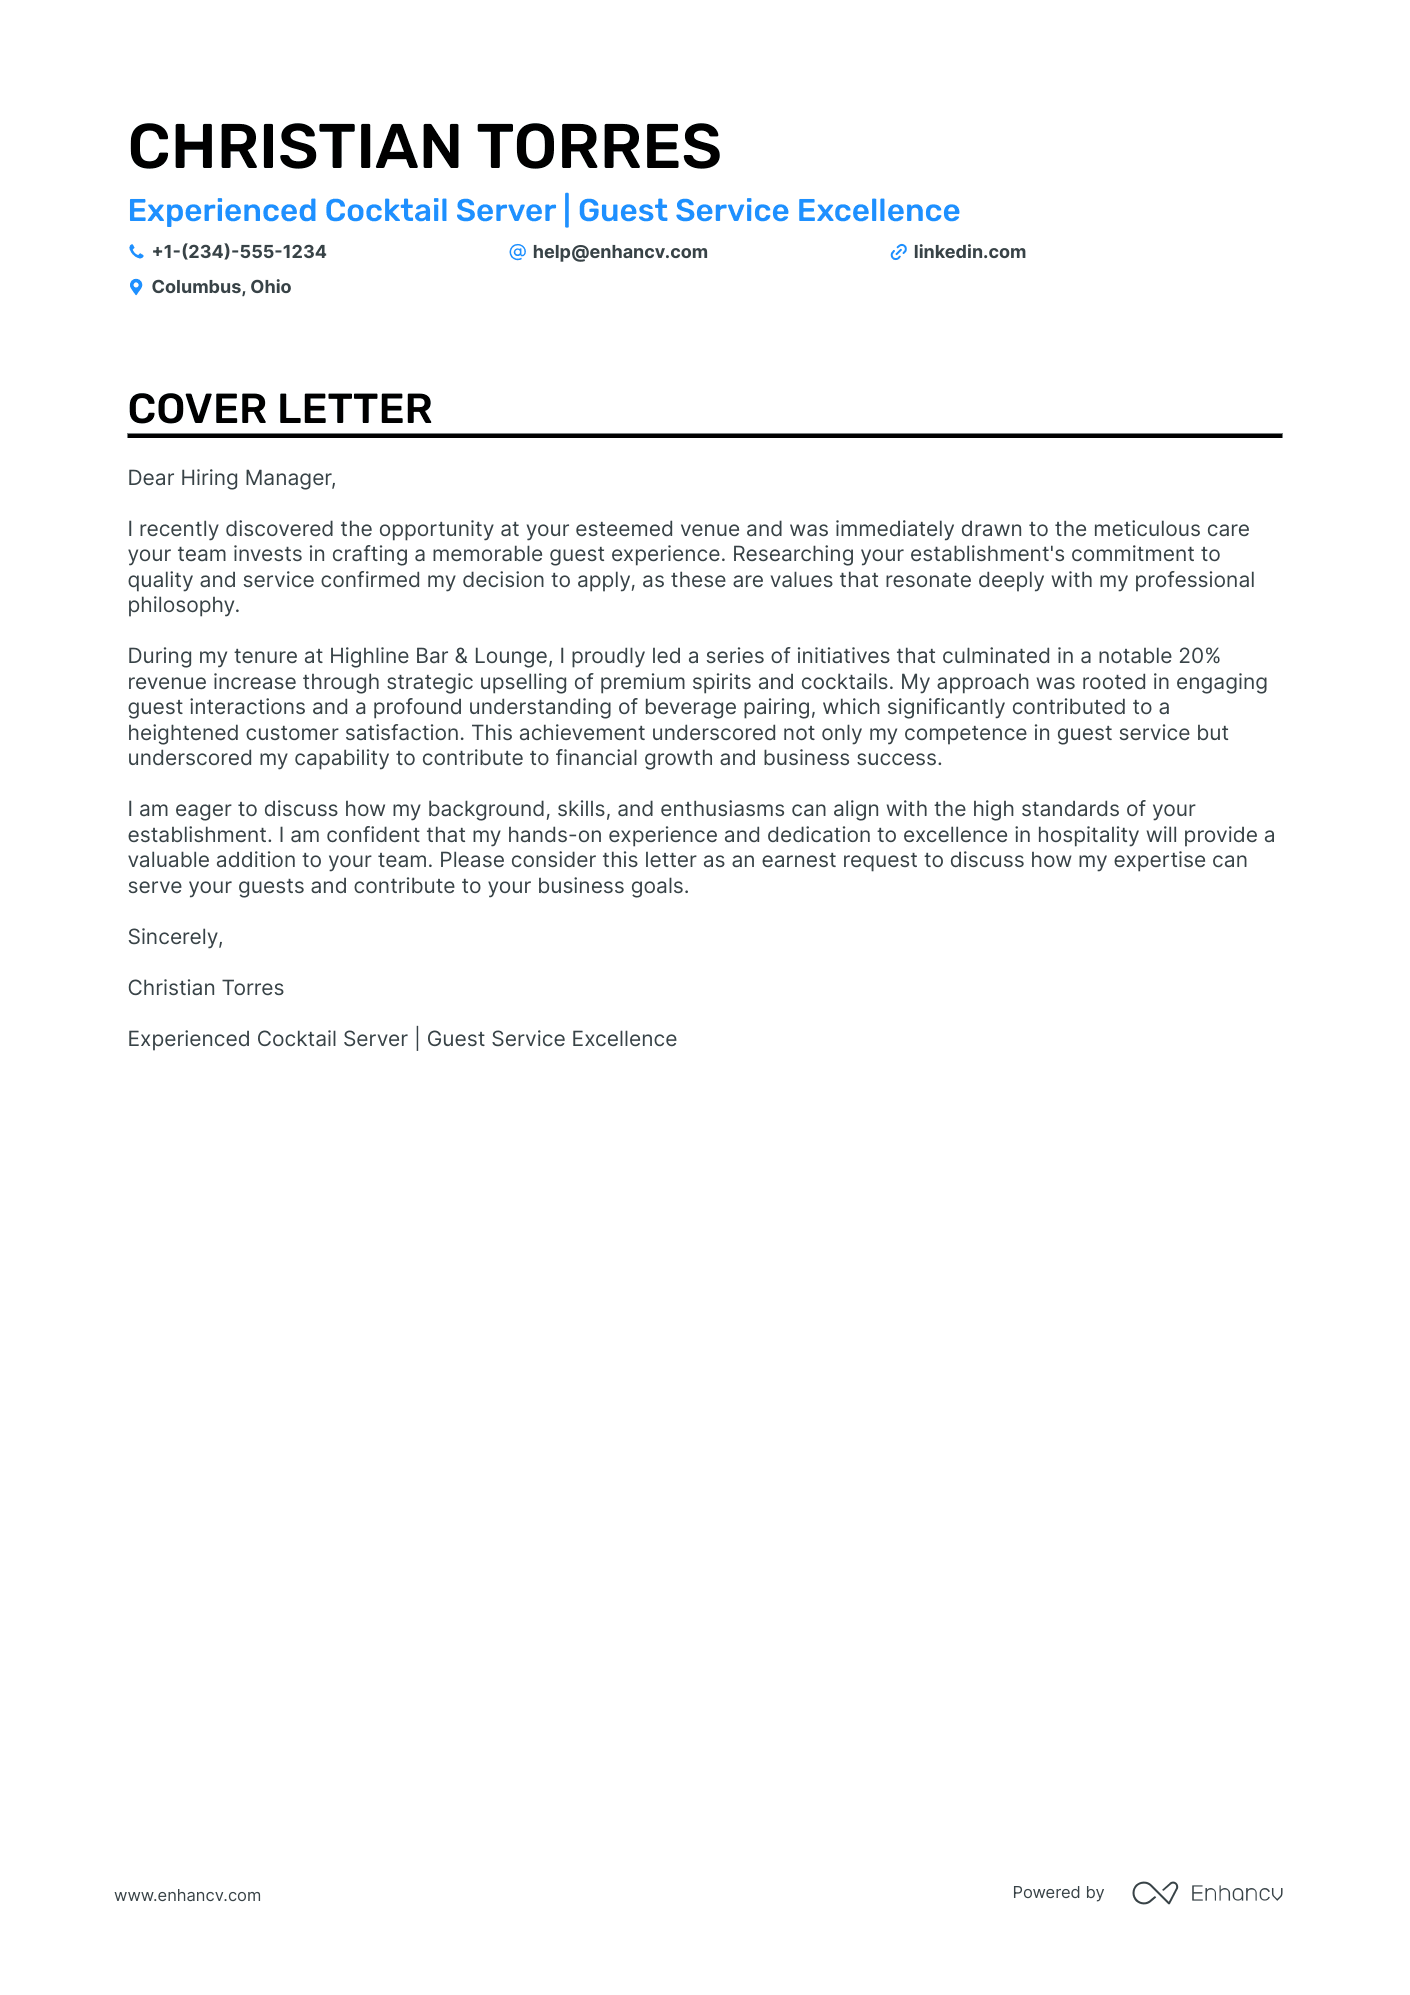 cover letter sample for server position